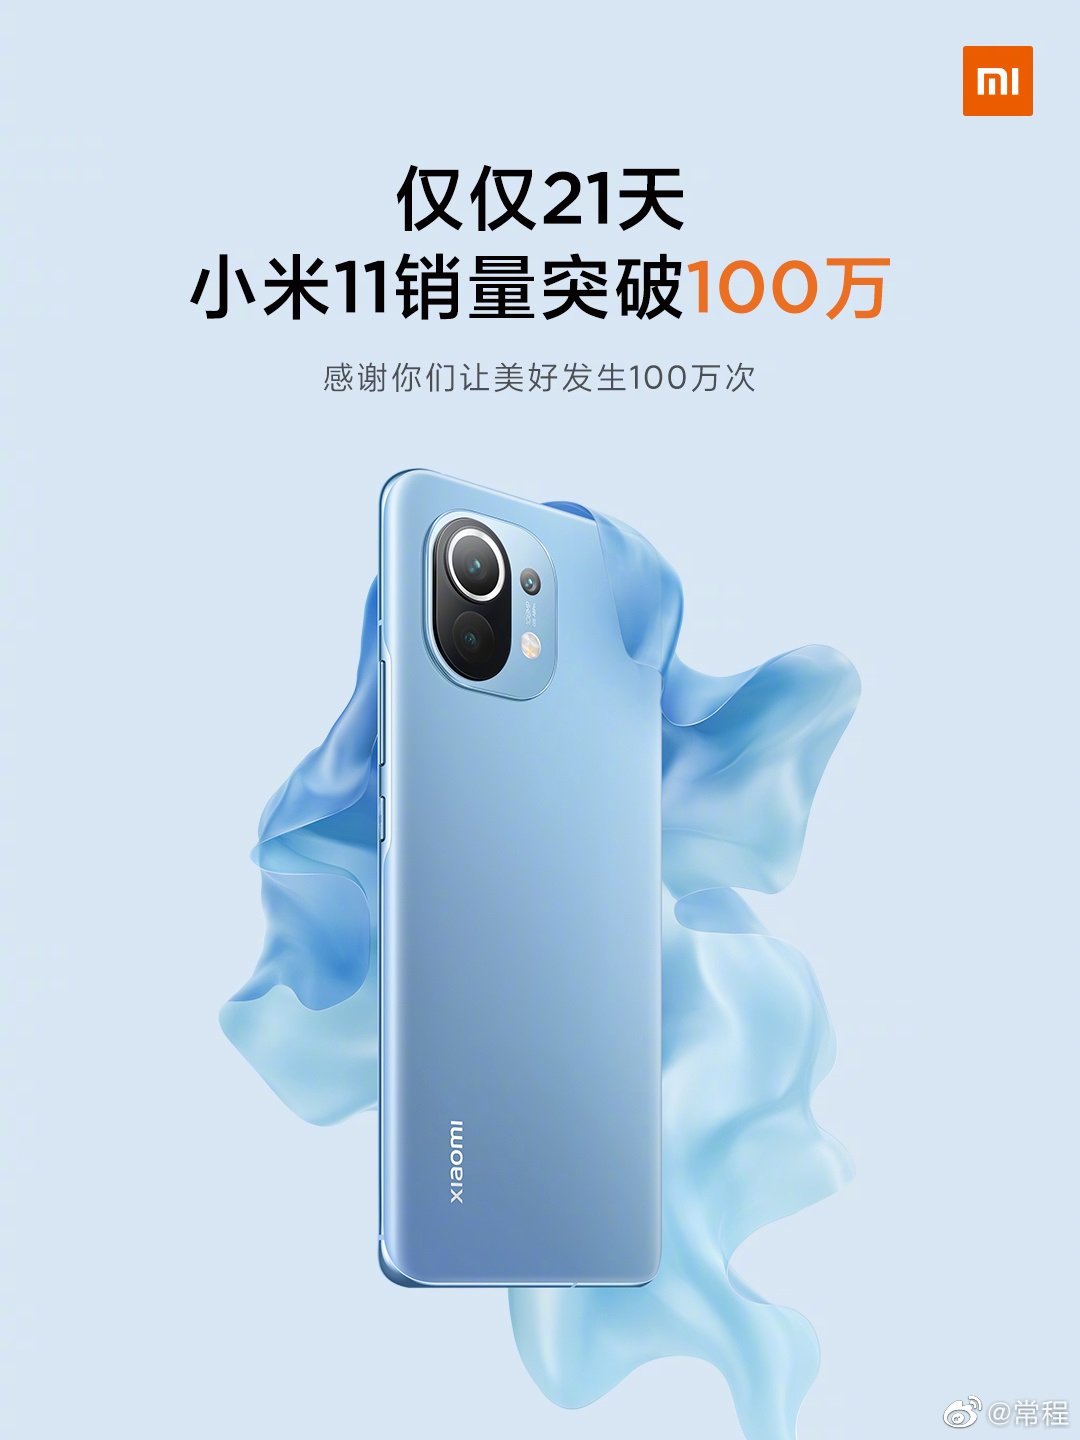 Xiaomi Mi 11 Million Units Sold